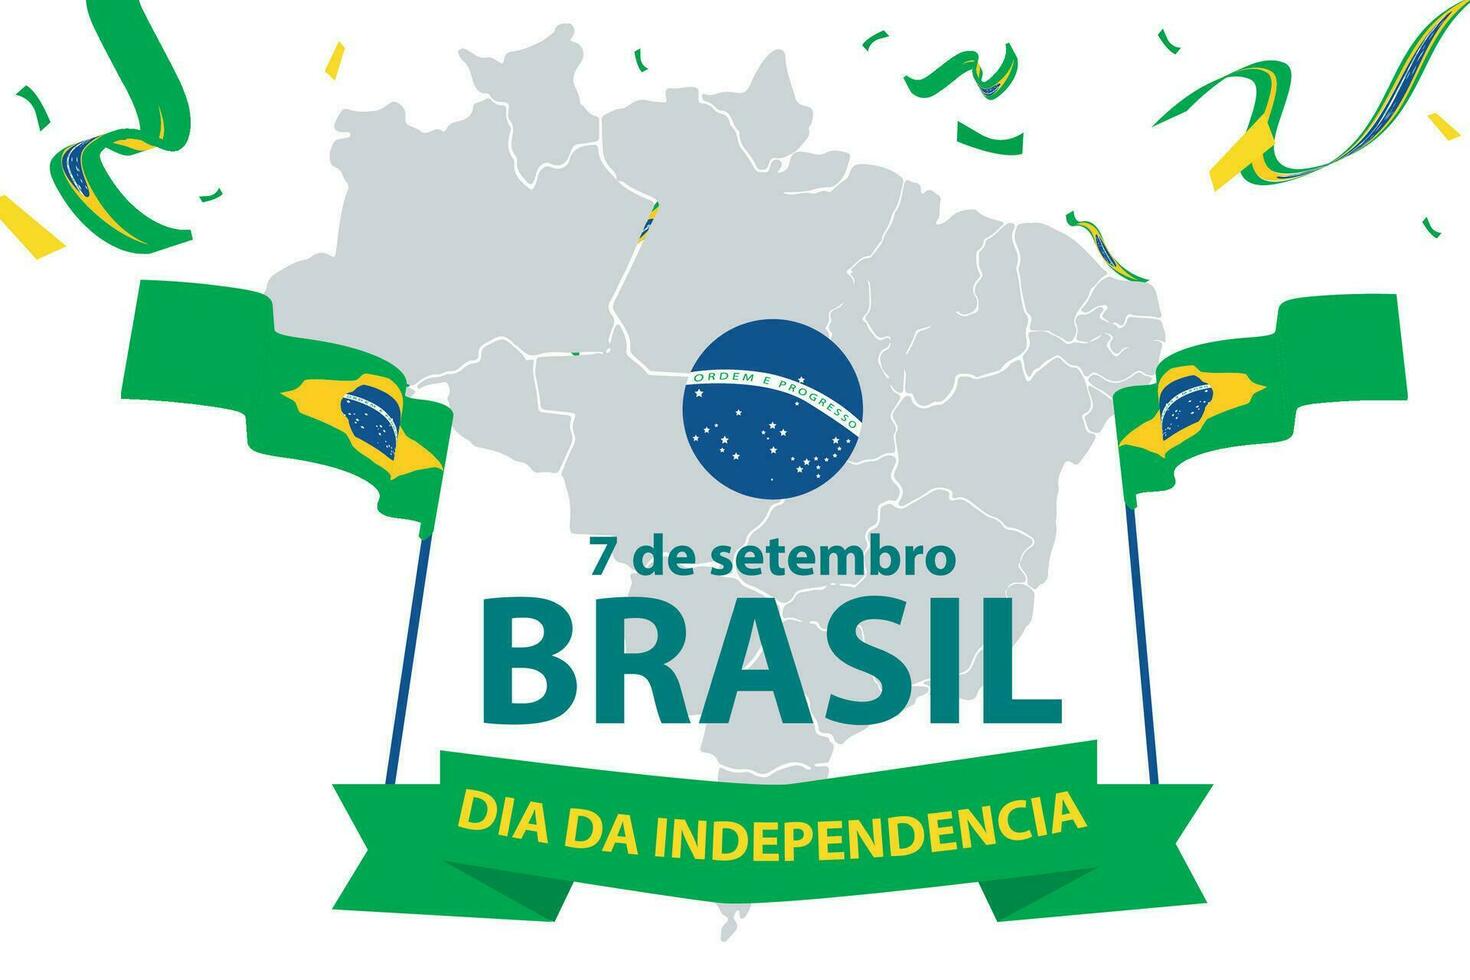 Brasilien oberoende dag 7 september firande vektor mall baner, social media posta, flygblad eller hälsning kort med gul grön tema och flagga. vektor illustration